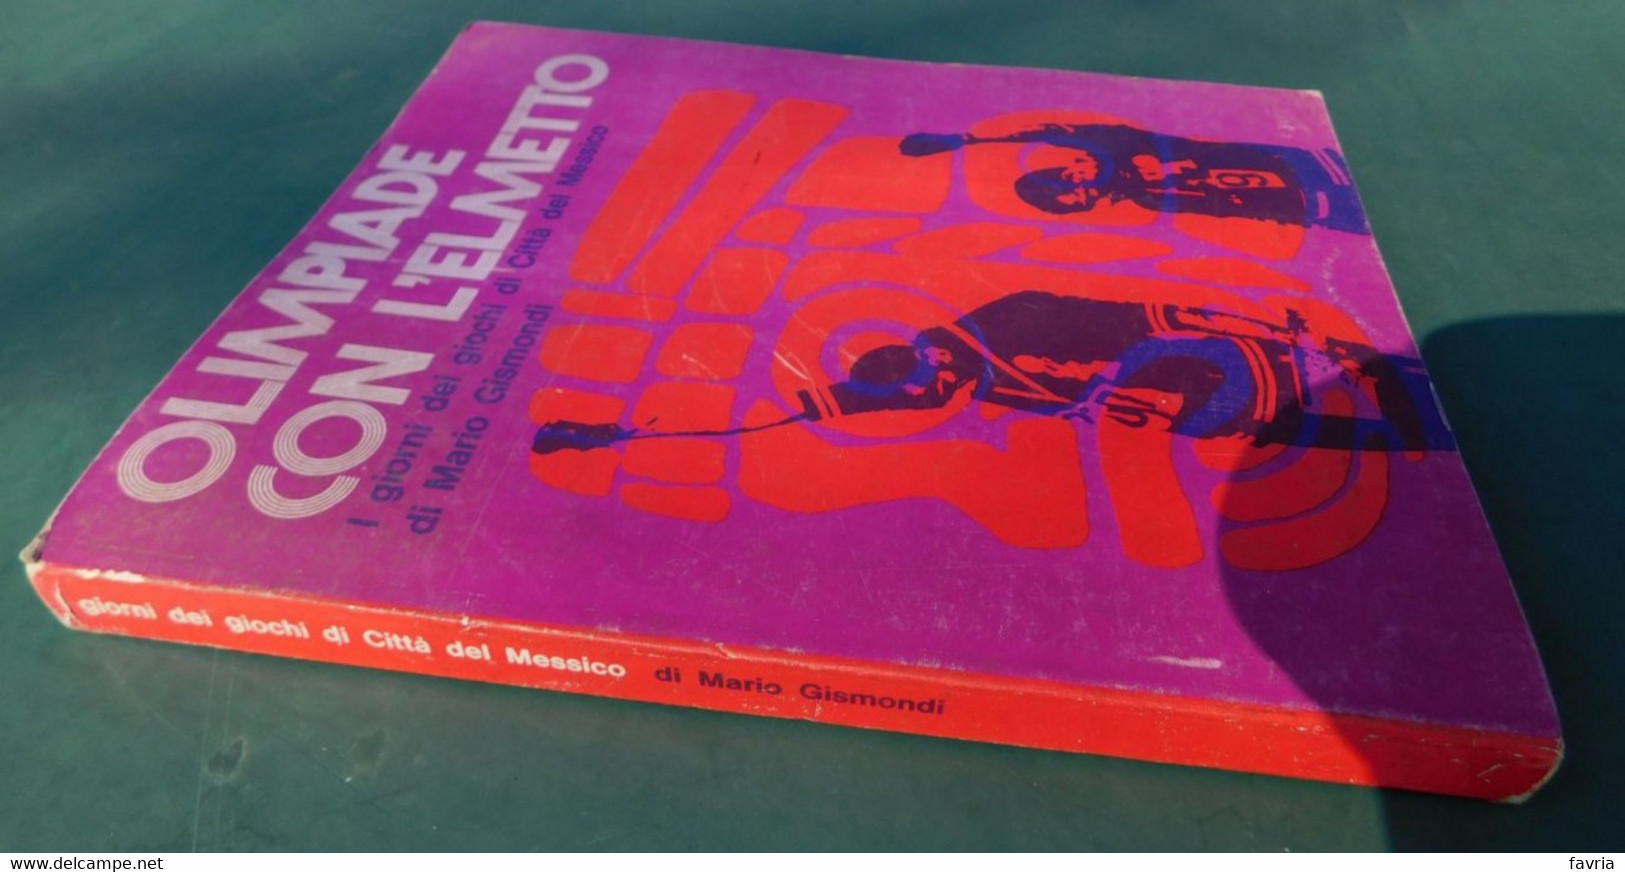 OLIMPIADE CON L'ELMETTO ( I Giorni Dei Giochi Di Città Del Messico) - Di Mario Gismondi - Ed. Gisca,1969 - Libros